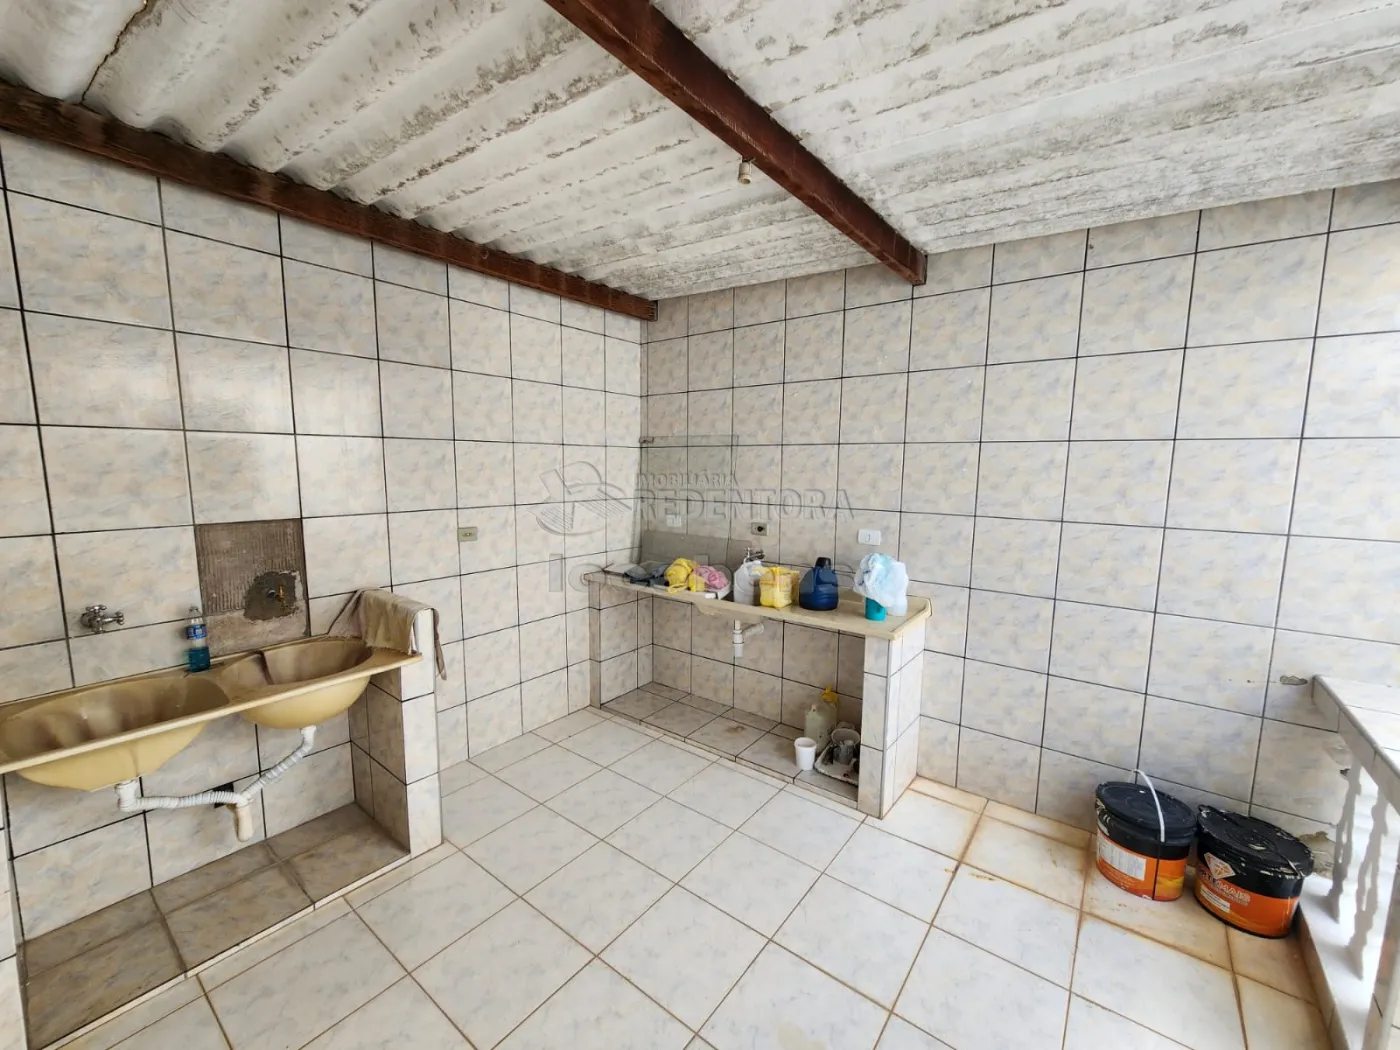 Alugar Casa / Padrão em São José do Rio Preto R$ 1.800,00 - Foto 12